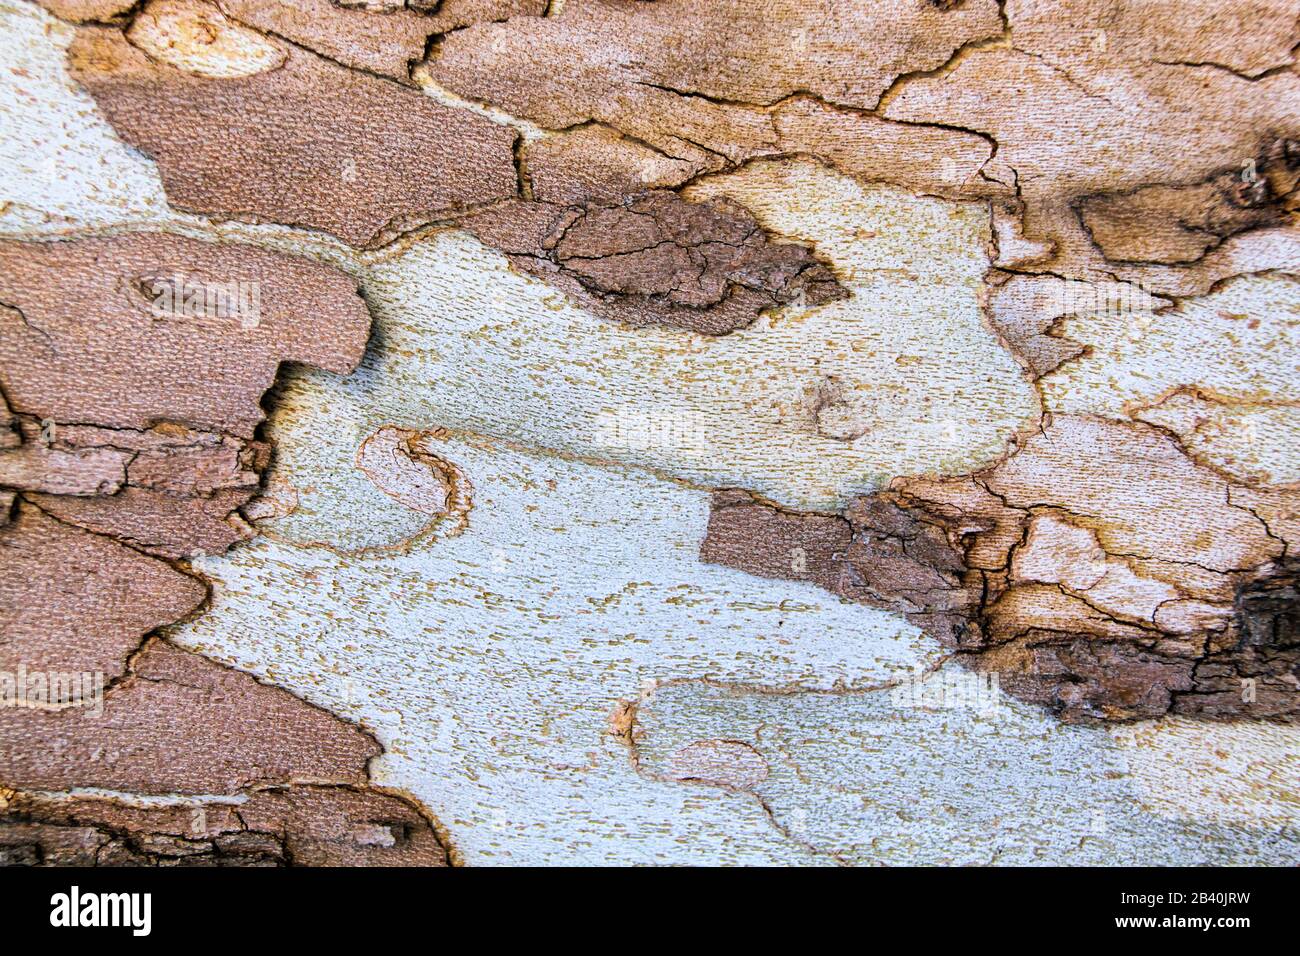 Nahaufnahme der bunt abblätternden Rinde eines Laubenbaumes, die abstrakte Muster erzeugt. Stockfoto